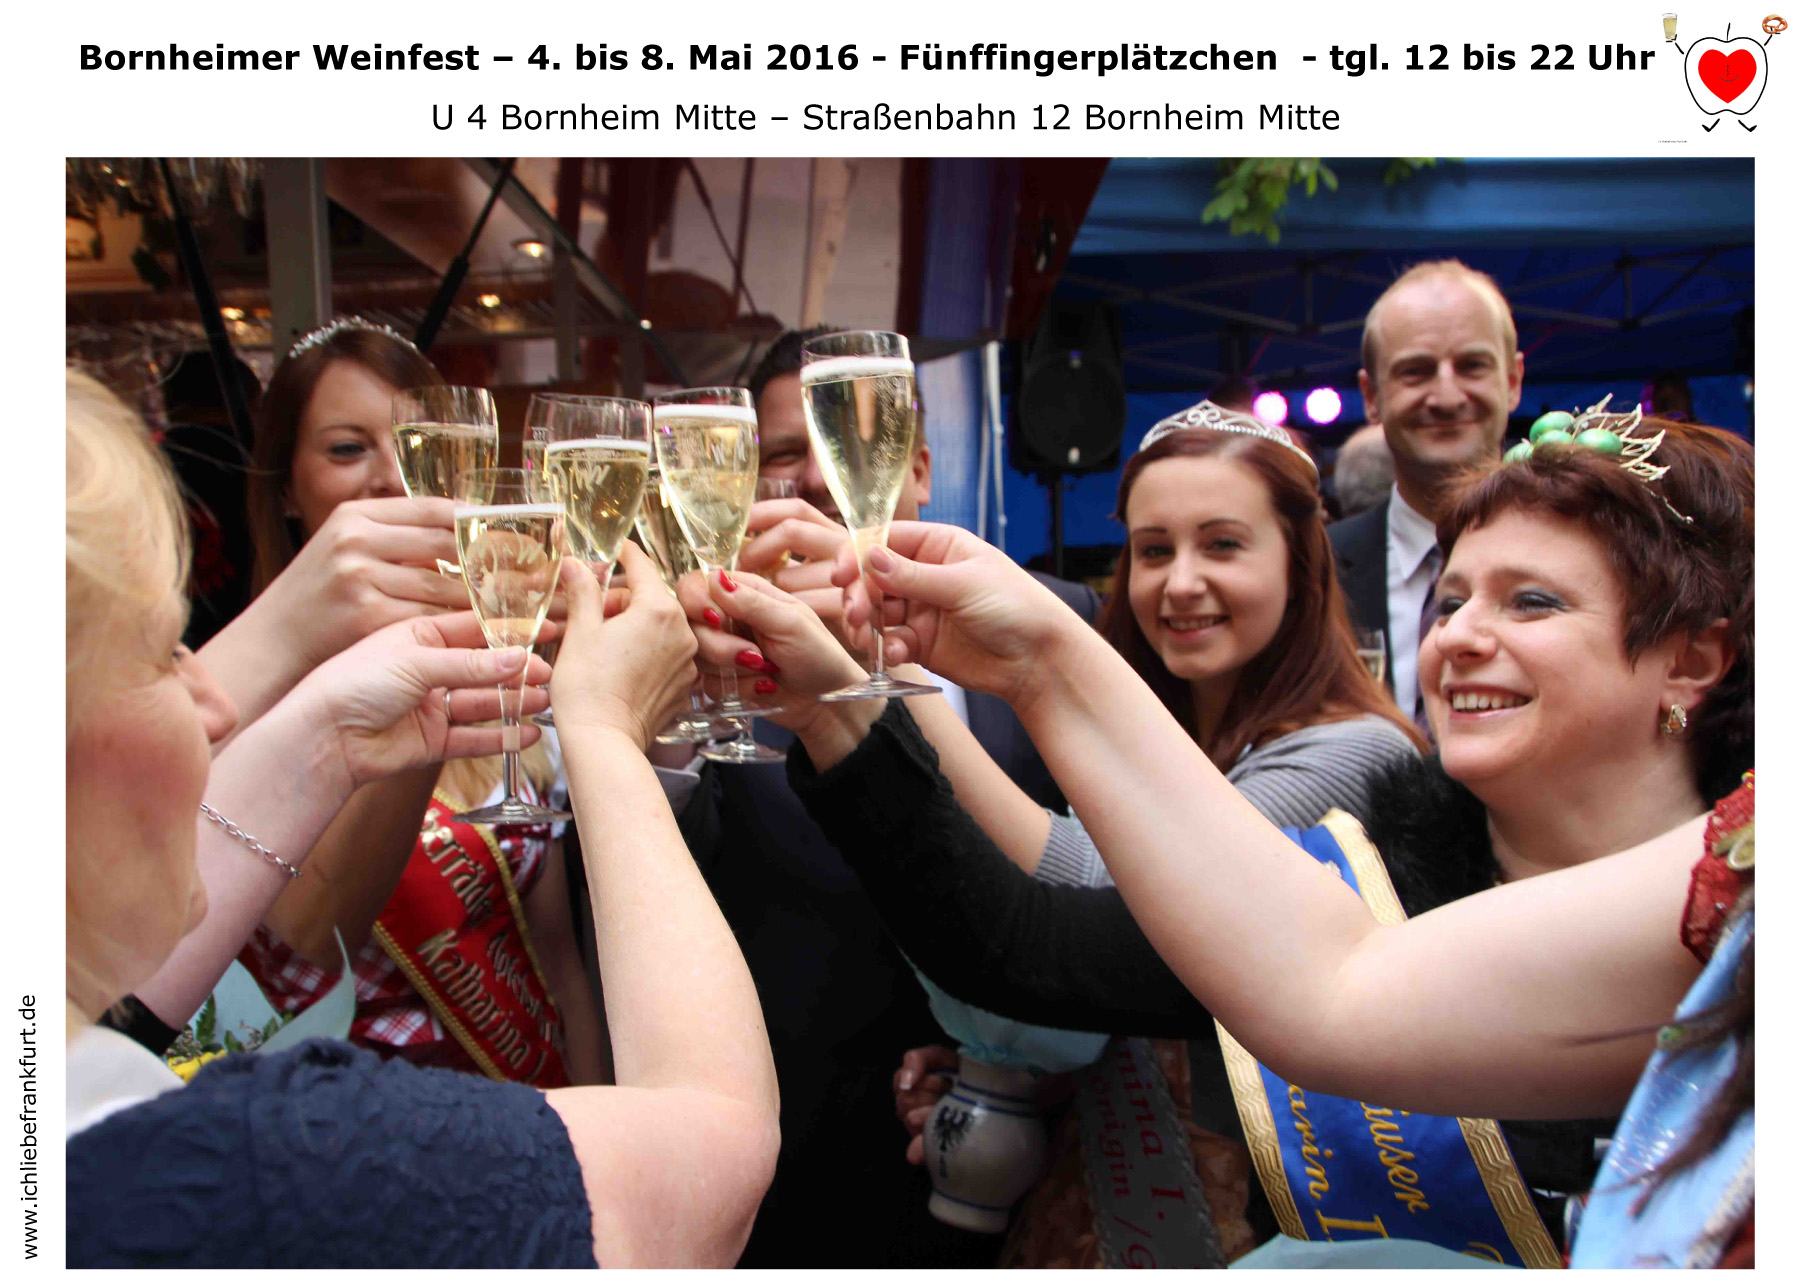 Bornheimer Weinfest am Fnffingerpltzchen - 4. bis 8. Mai, 12 bis 22 Uhr.< > Fotos: Bornheim / Feste & Feiern< >